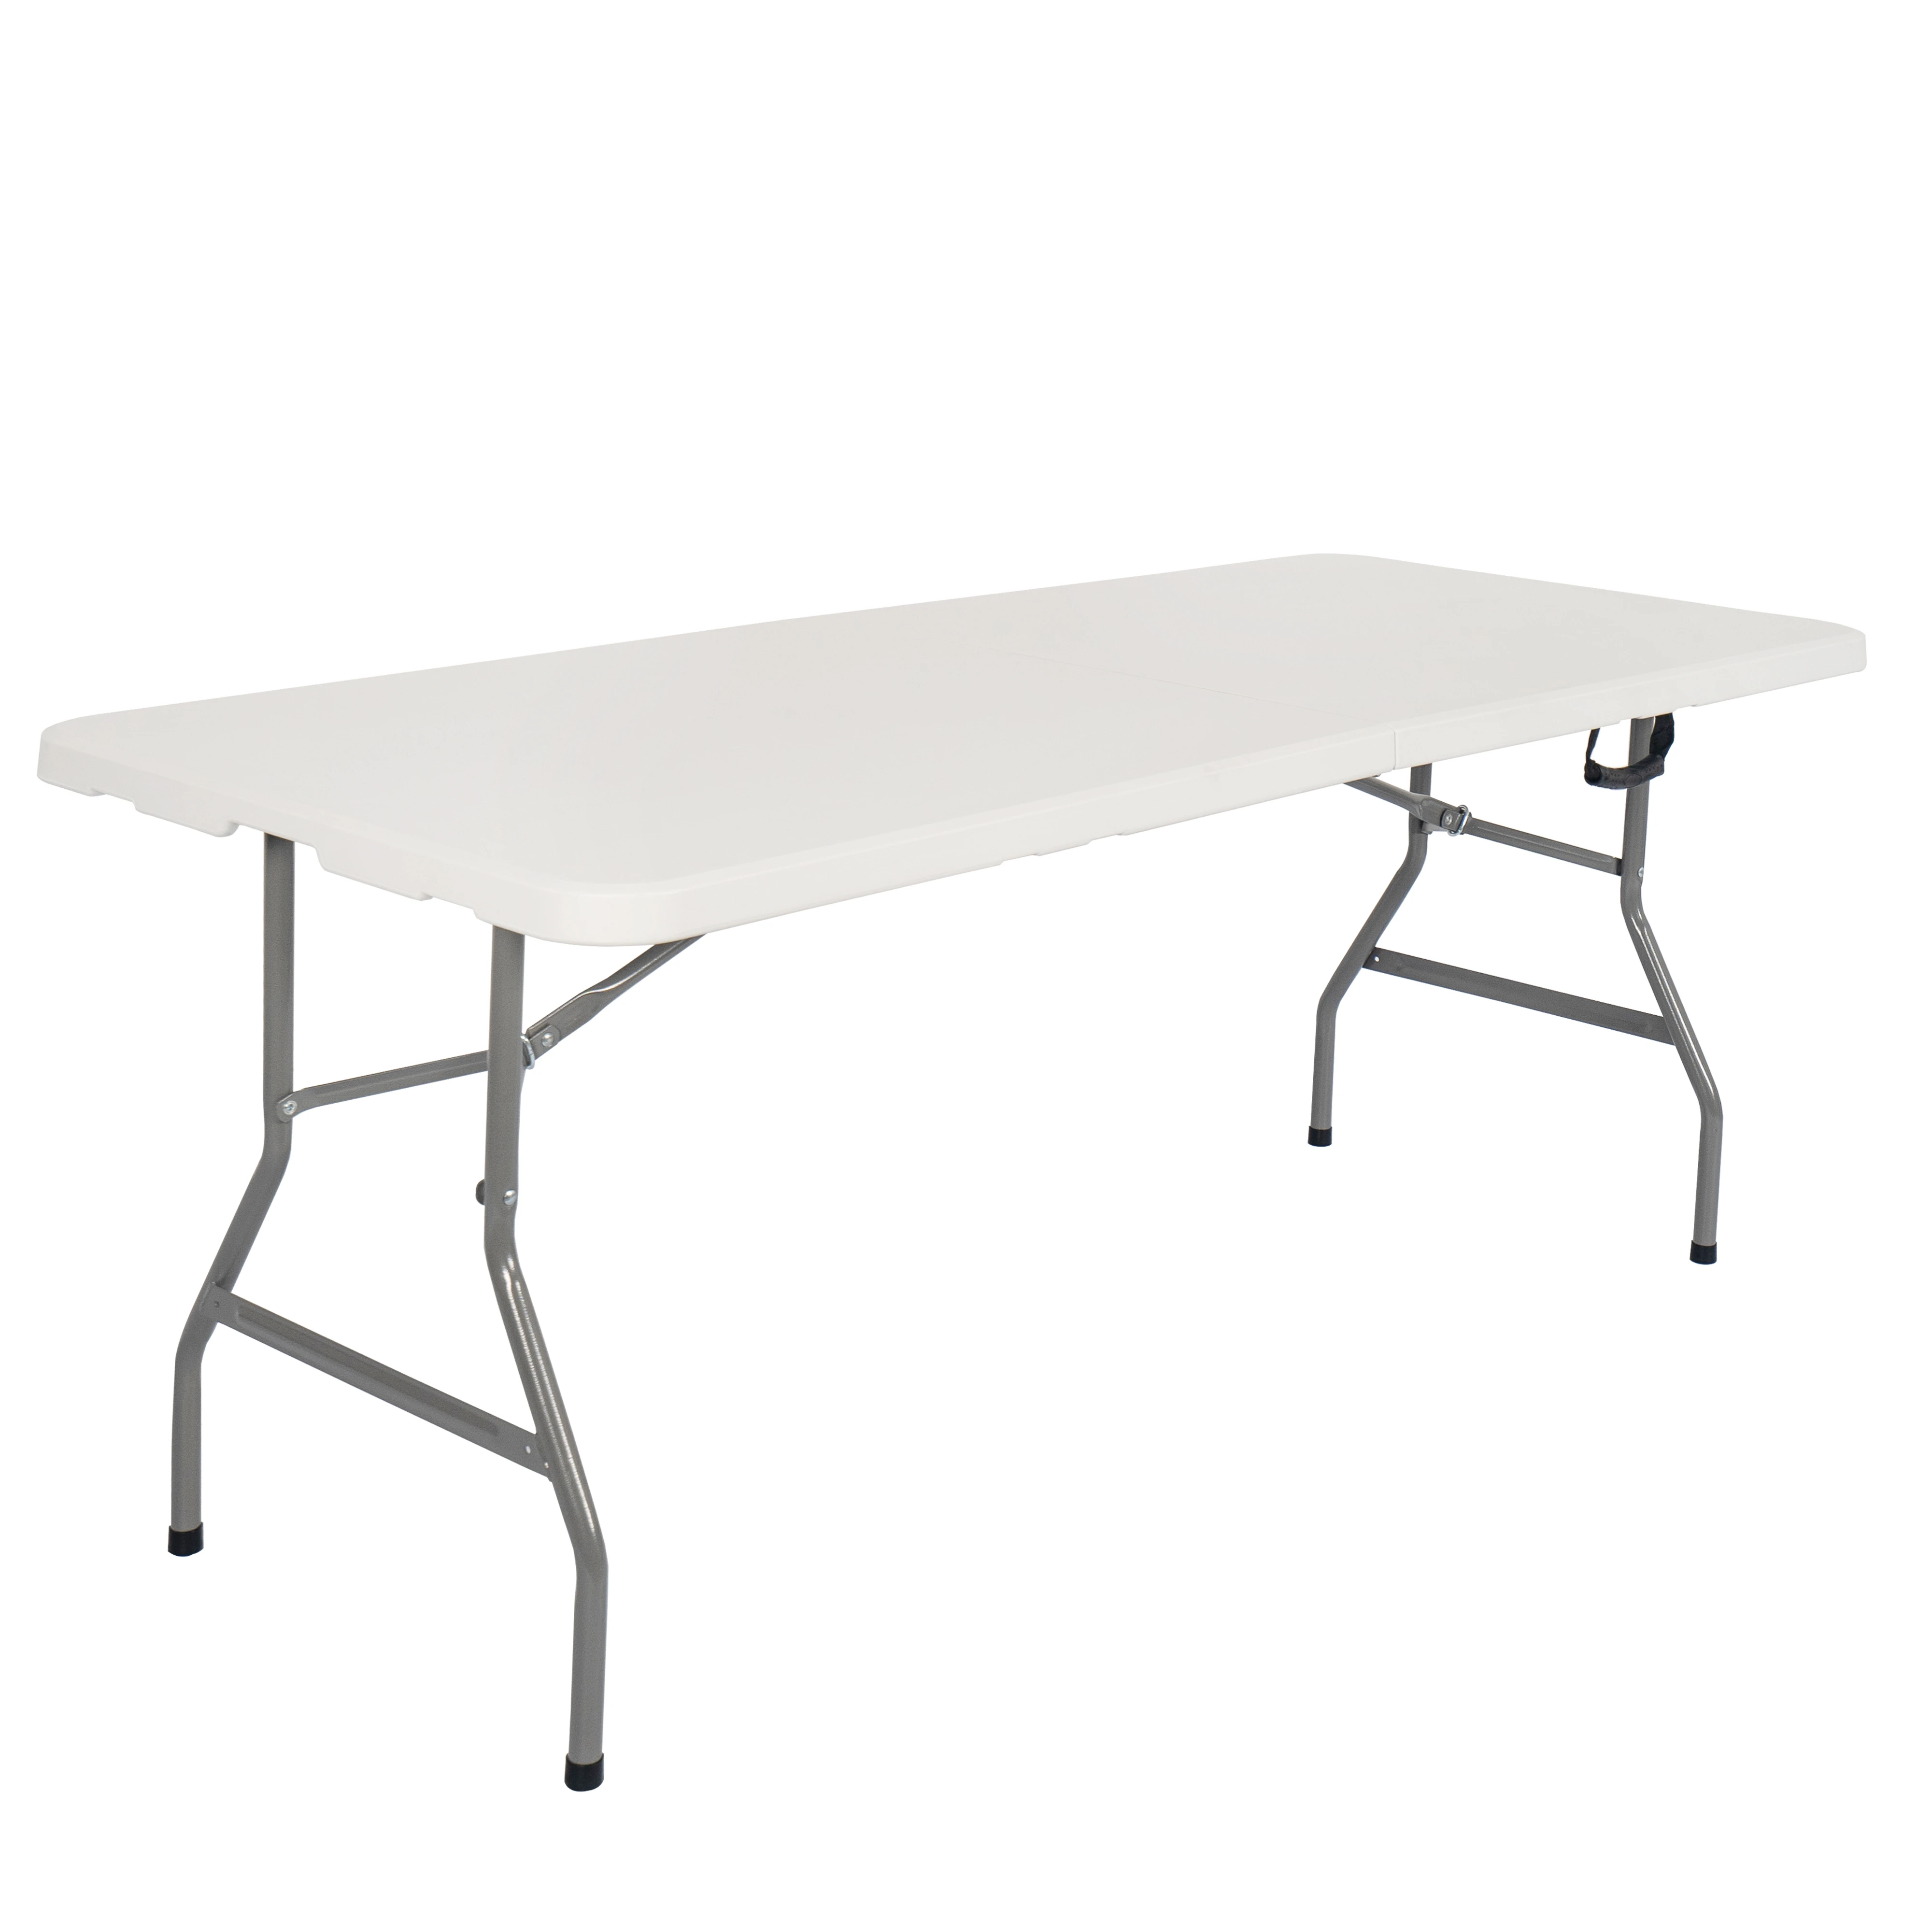 Дешевый белый пластиковый складной стол, 6 футов, 180 см, портативный стол для кемпинга по стандарту en581 (1600072173124)